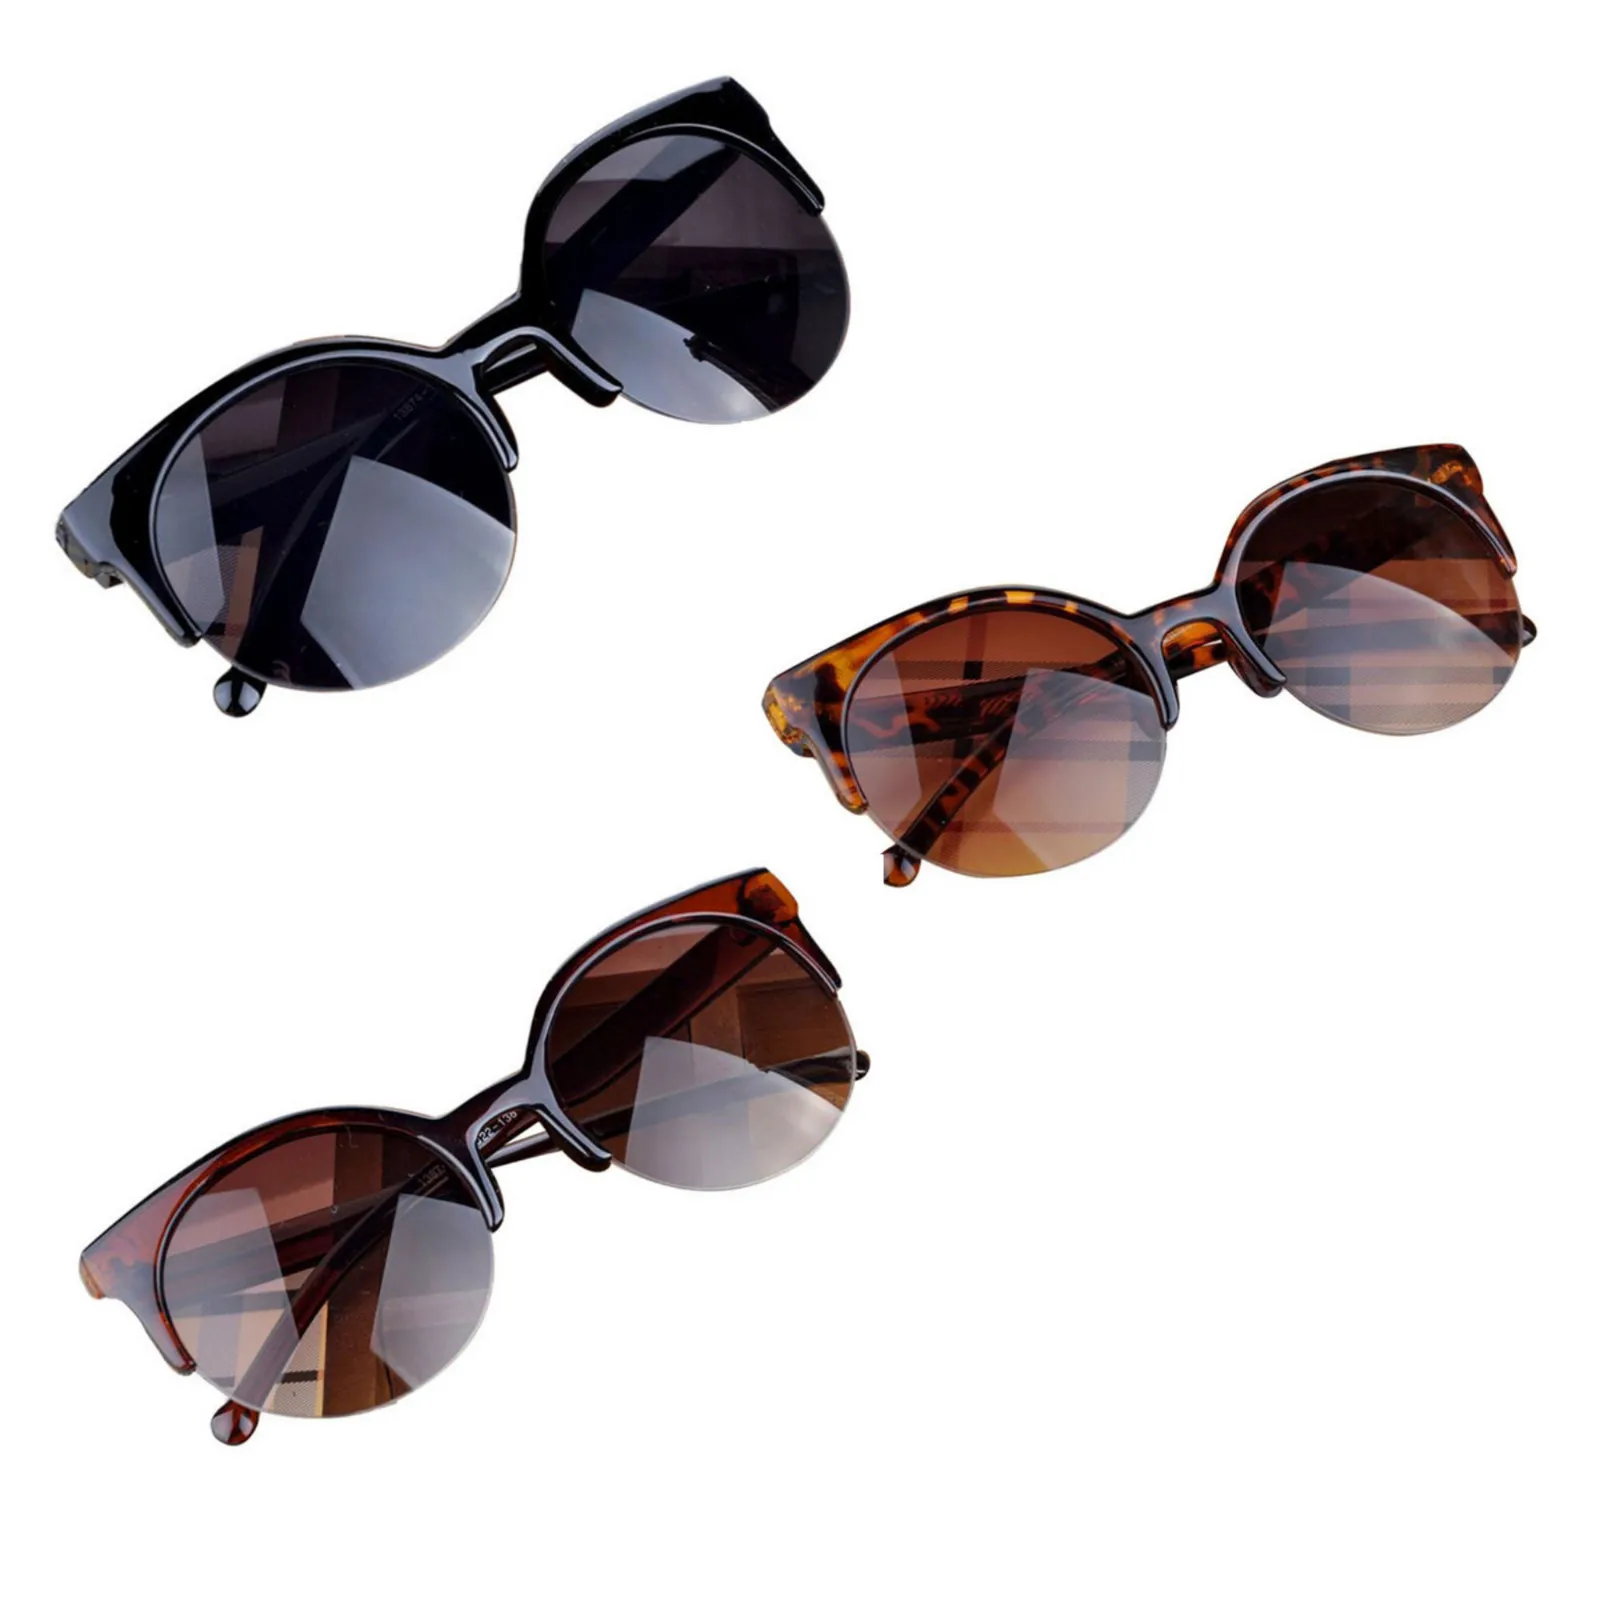 New Fashion Vintage Sunglasses Retro Cat Eye Semi-Rim Round Sunglasses for Men Women Sun Glasses Driver Goggles Accessories